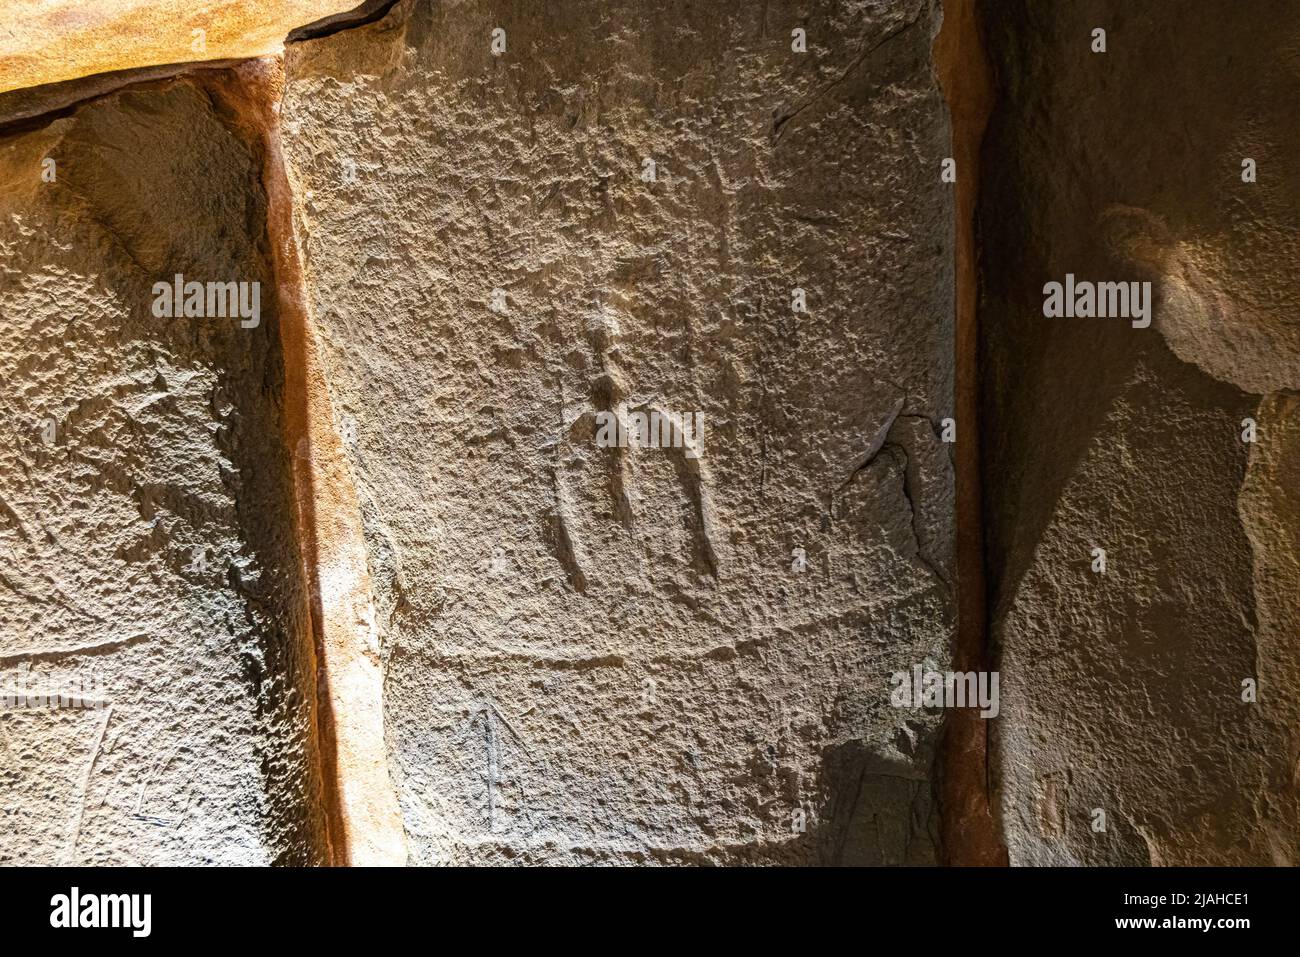 Manifestation artistique gravée dans la pierre du monument mégalithique d'El dolmen de Soto Banque D'Images